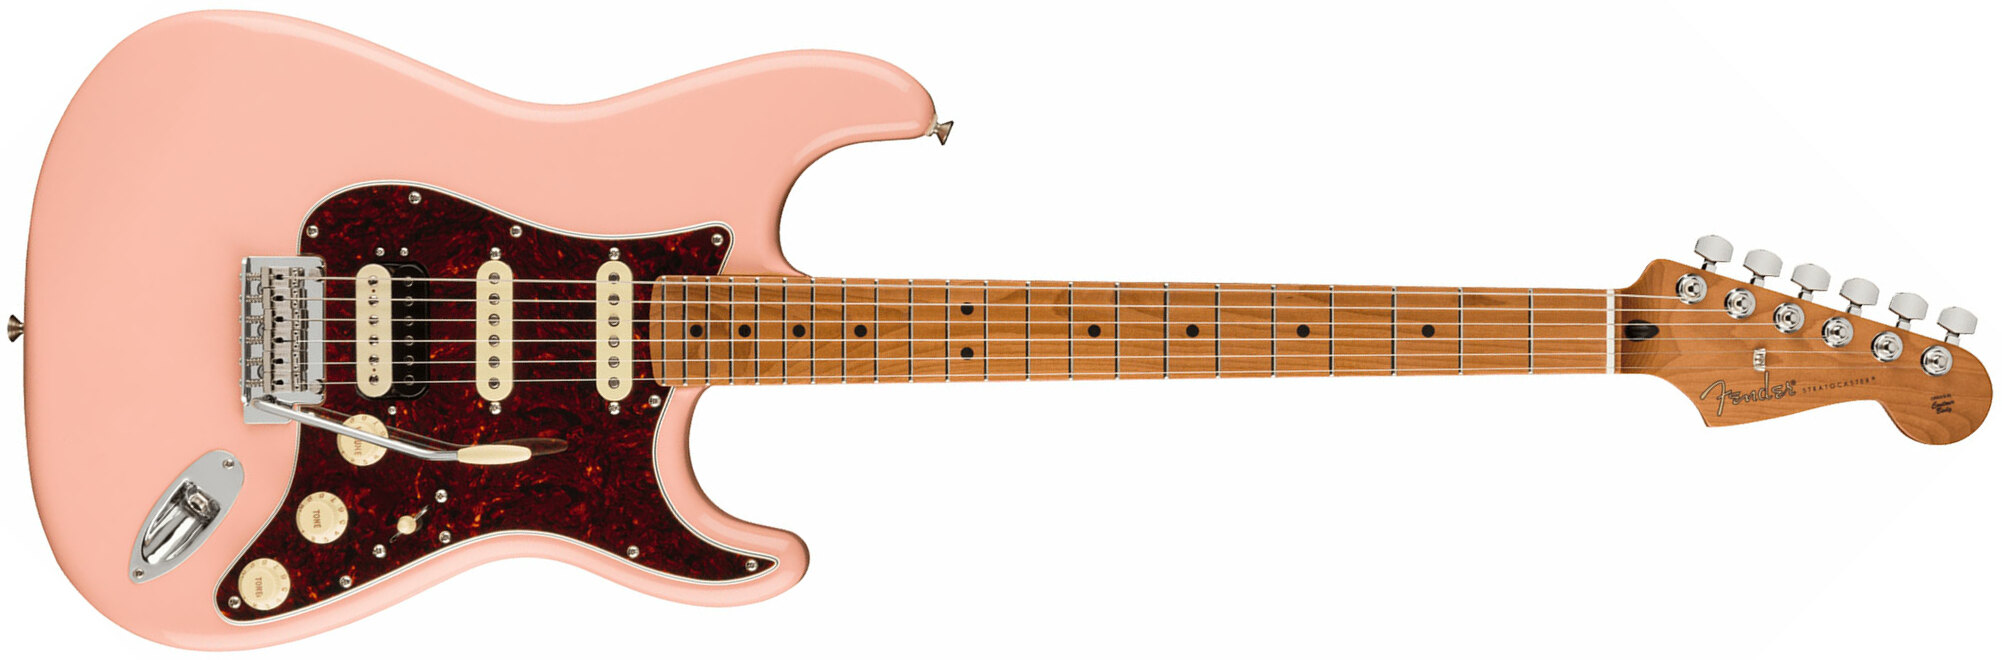 Fender Strat Player Roasted Neck Ltd Mex Hss Trem Mn - Shell Pink - Elektrische gitaar in Str-vorm - Main picture